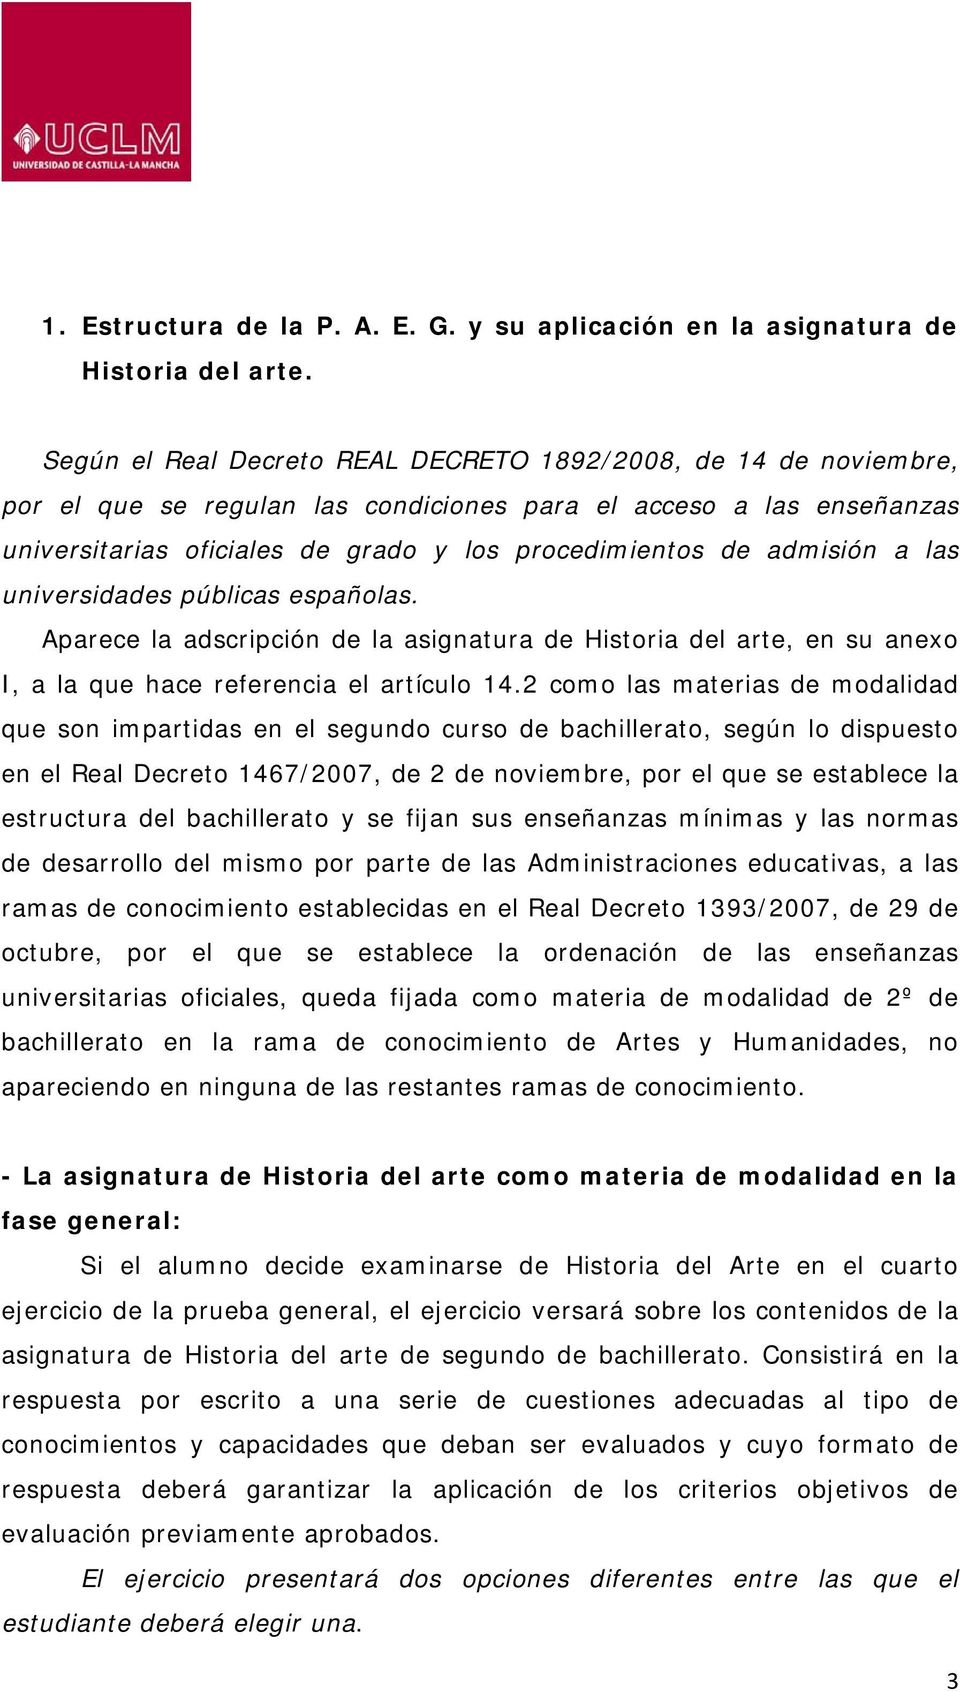 admisión a las universidades públicas españolas. Aparece la adscripción de la asignatura de Historia del arte, en su anexo I, a la que hace referencia el artículo 14.